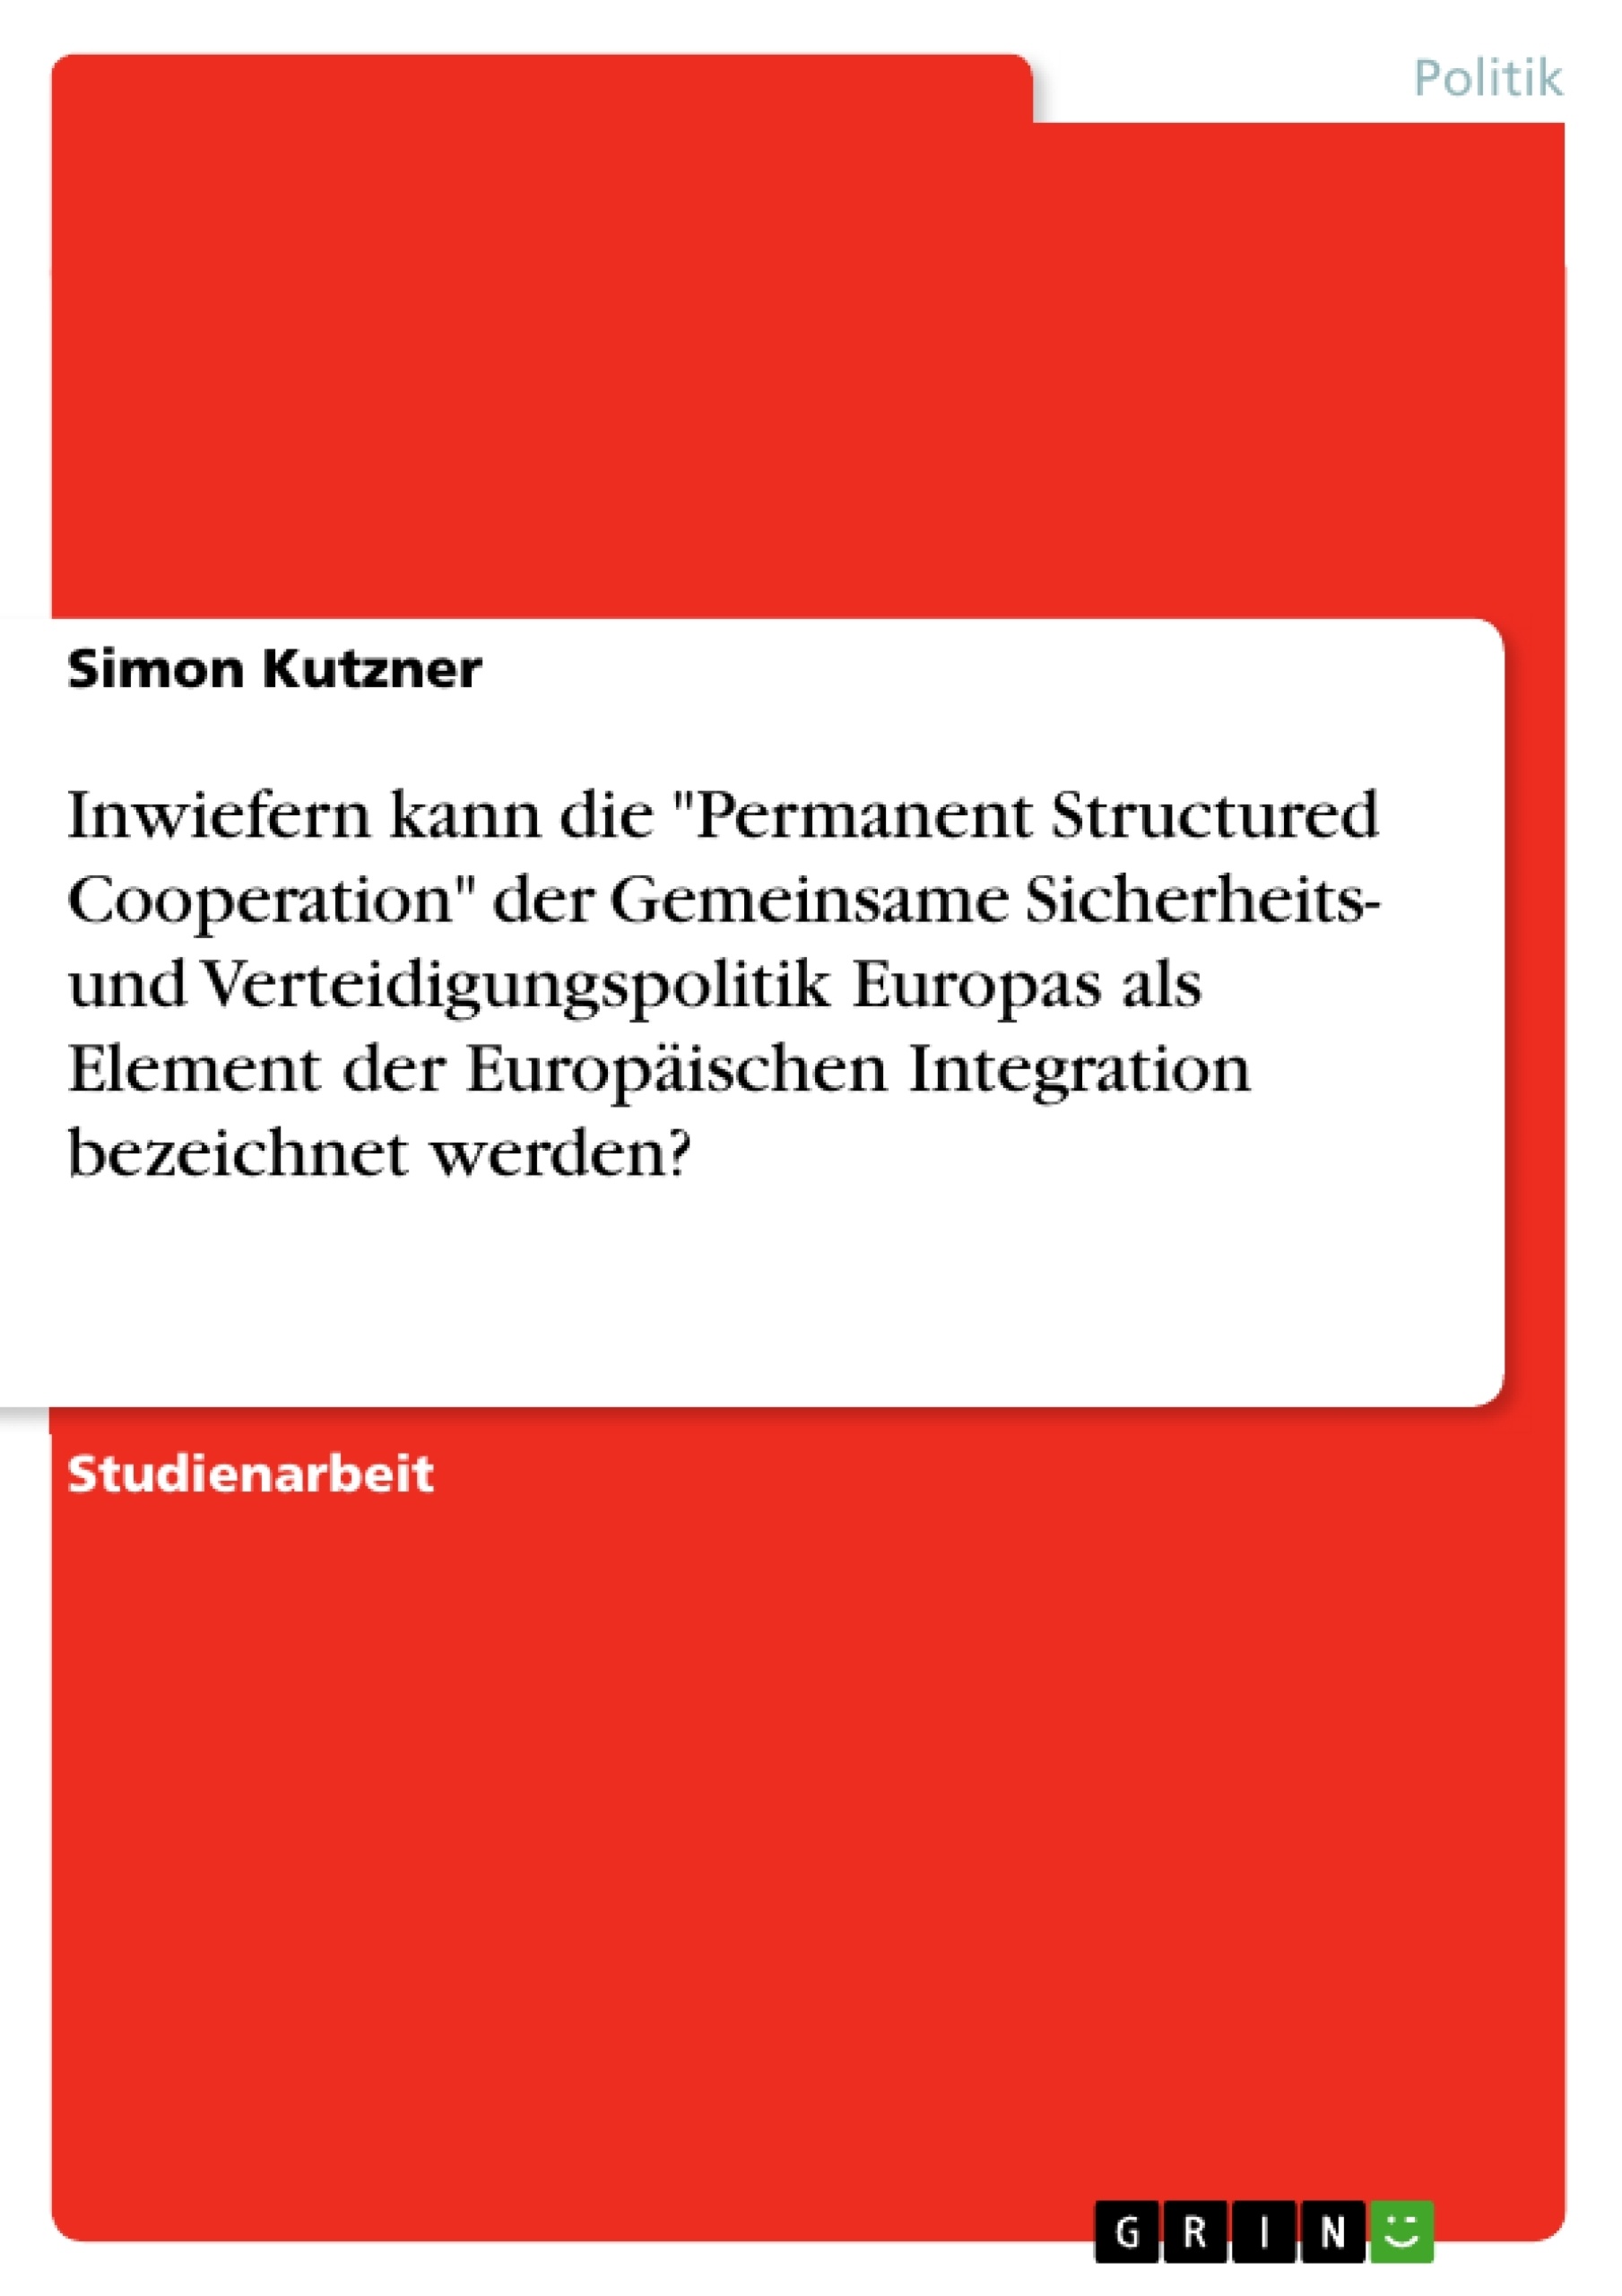 Titel: Inwiefern kann die "Permanent Structured Cooperation" der Gemeinsame Sicherheits- und Verteidigungspolitik Europas als Element der Europäischen Integration bezeichnet werden?